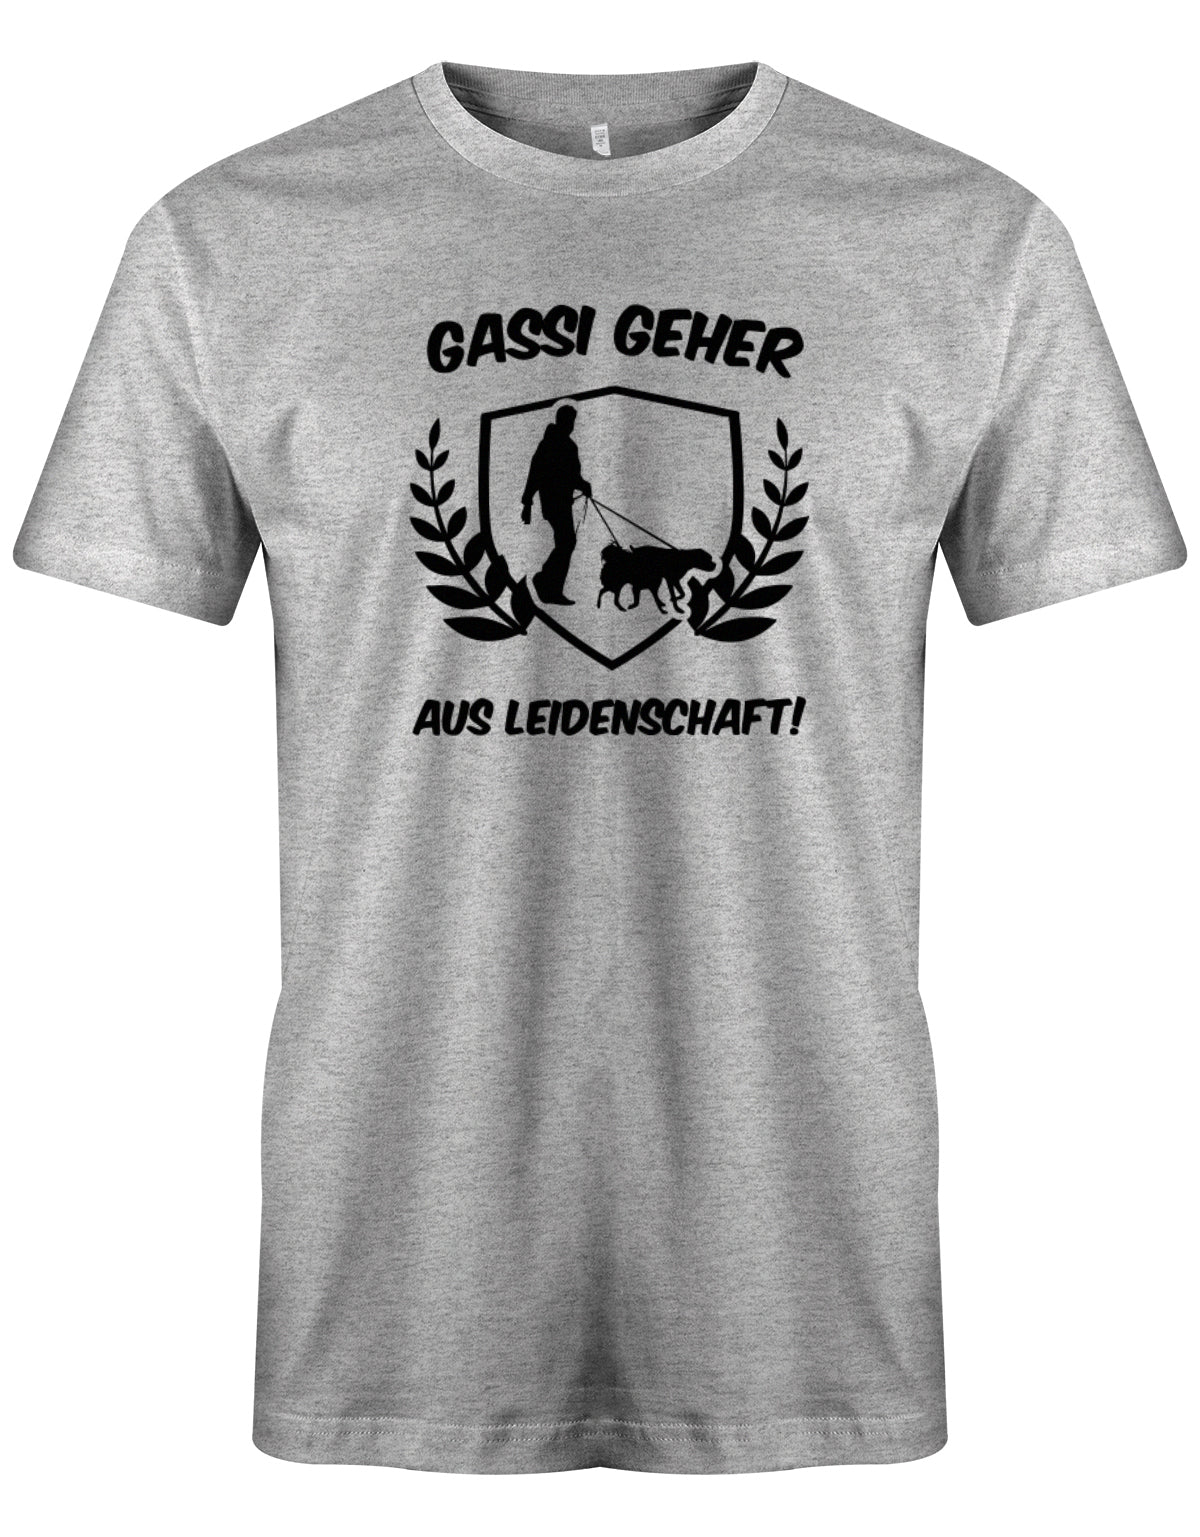 herren-shirt-grauwFD8G5AD24vsP